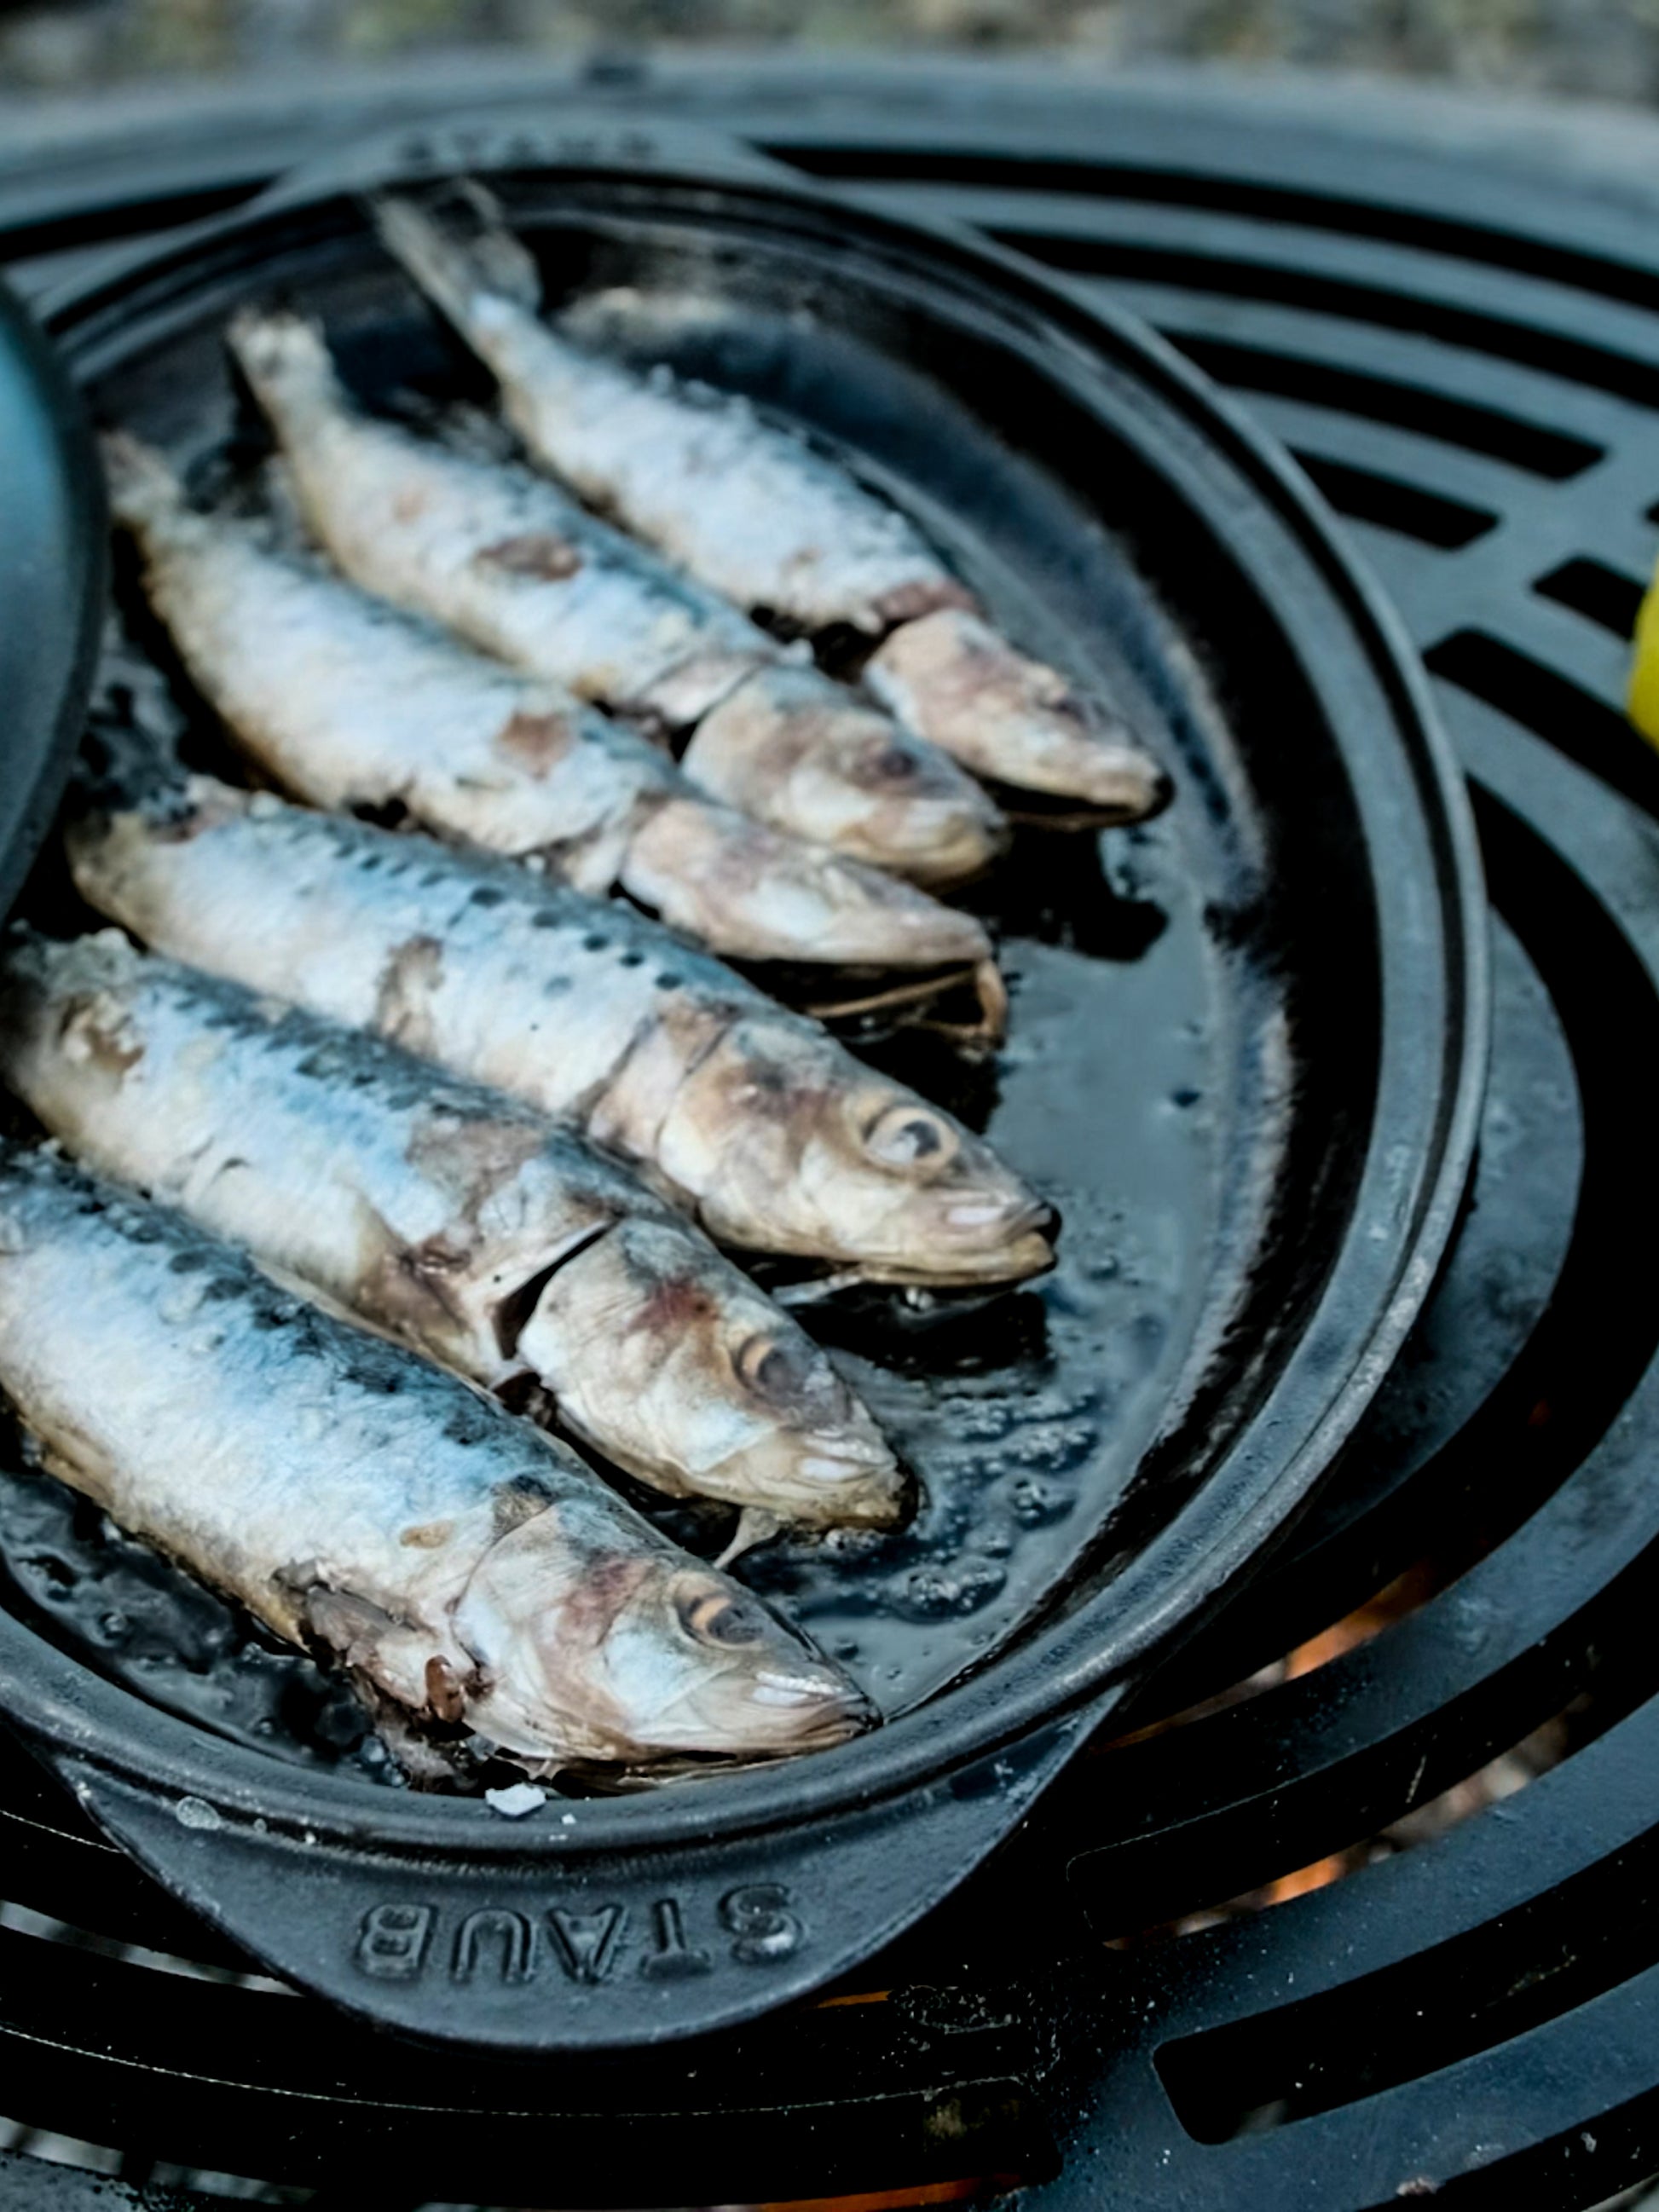 Sur La Table Cast Iron Fish Pan